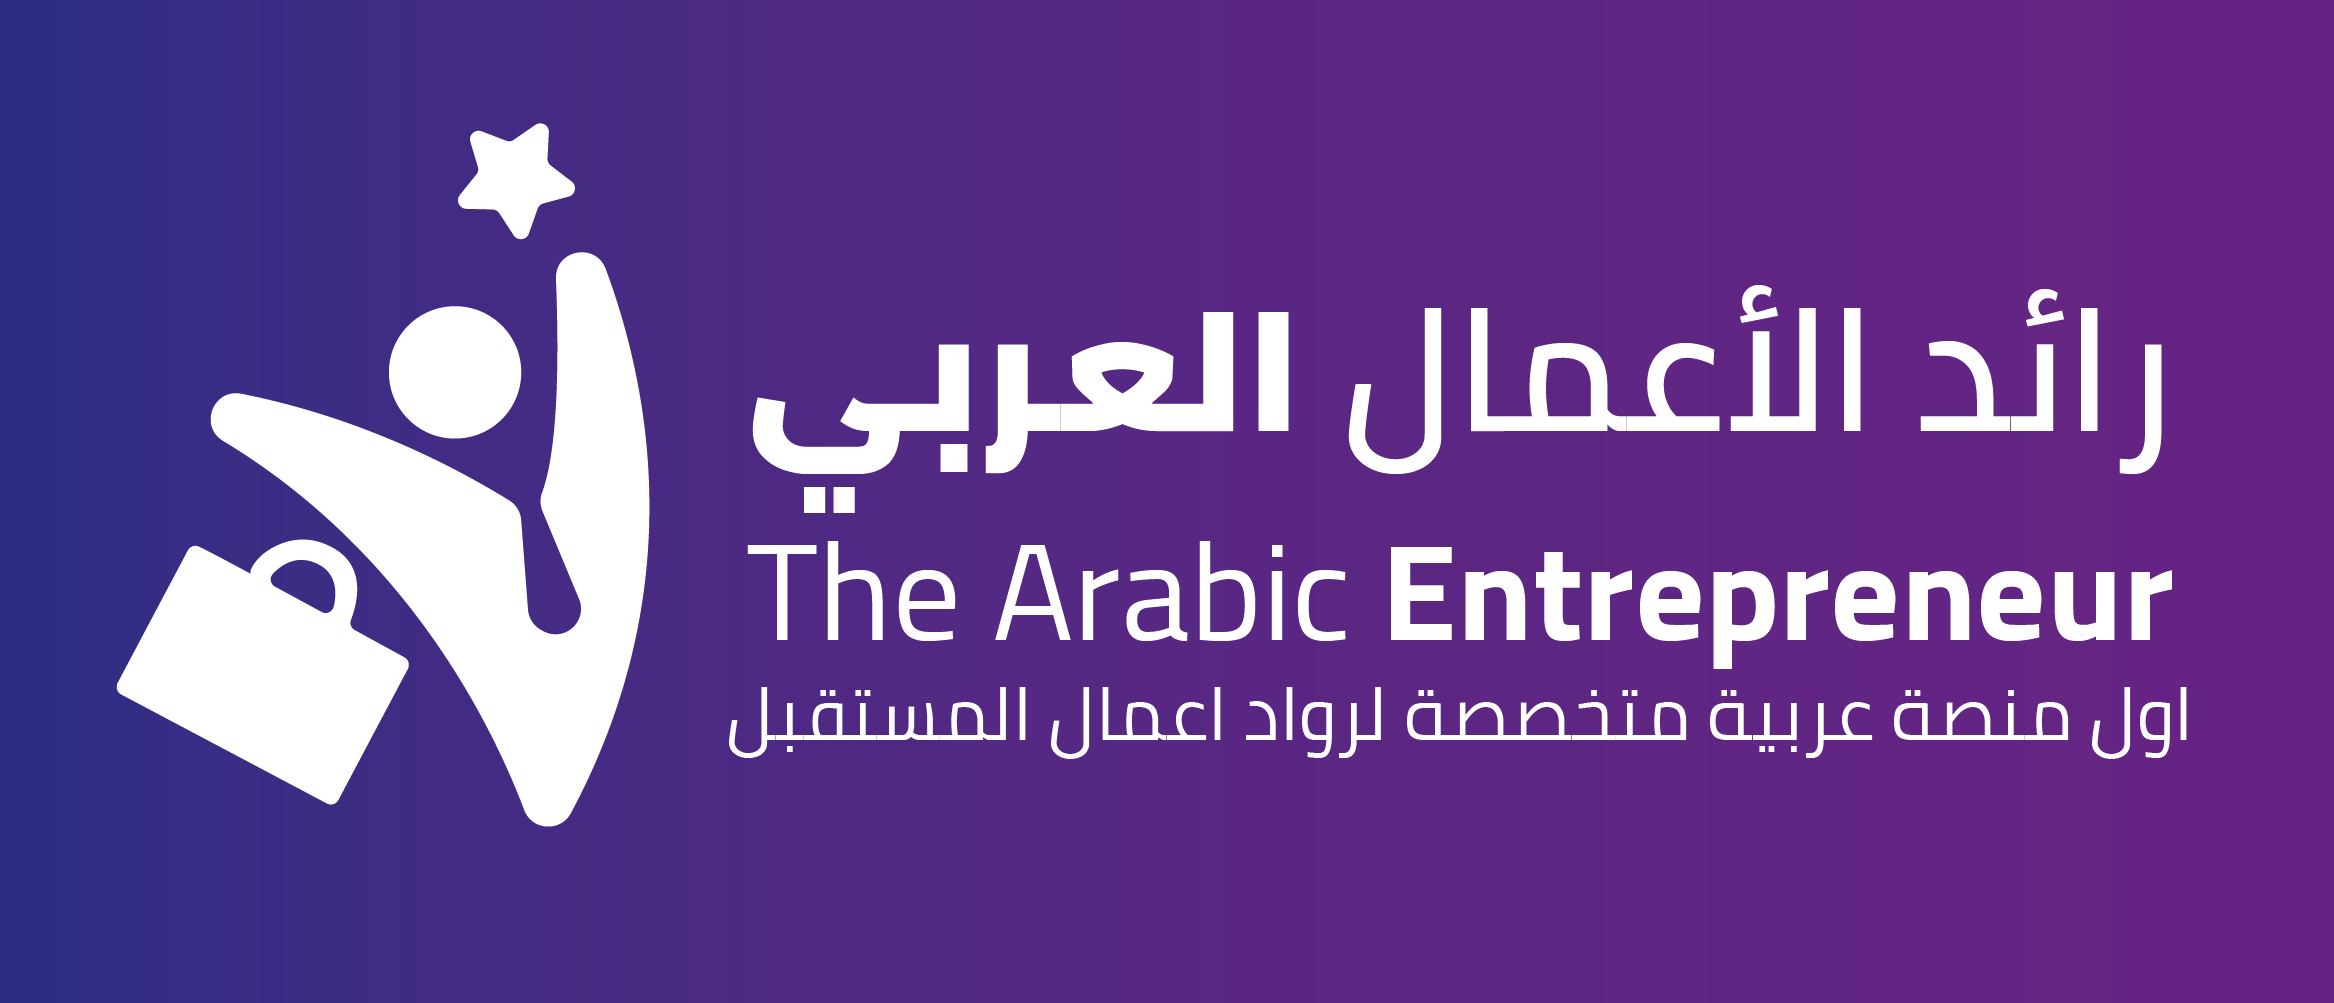 رواد الأعمال العرب